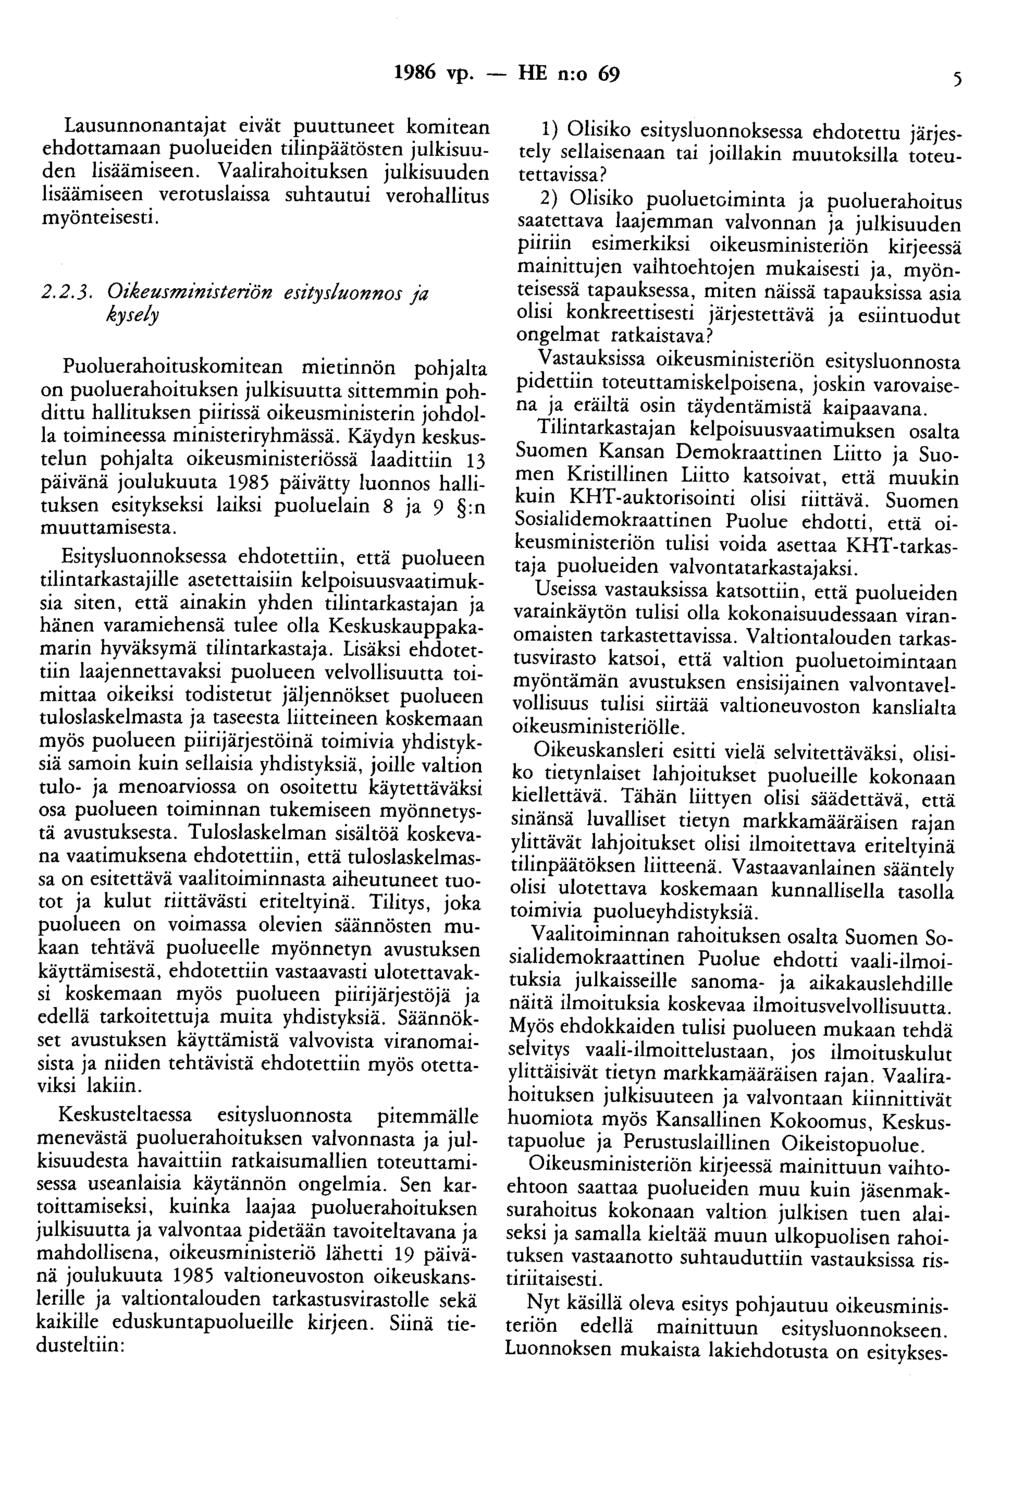 1986 vp. - HE n:o 69 5 Lausunnonantajat etvat puuttuneet komitean ehdottamaan puolueiden tilinpäätösten julkisuuden lisäämiseen.